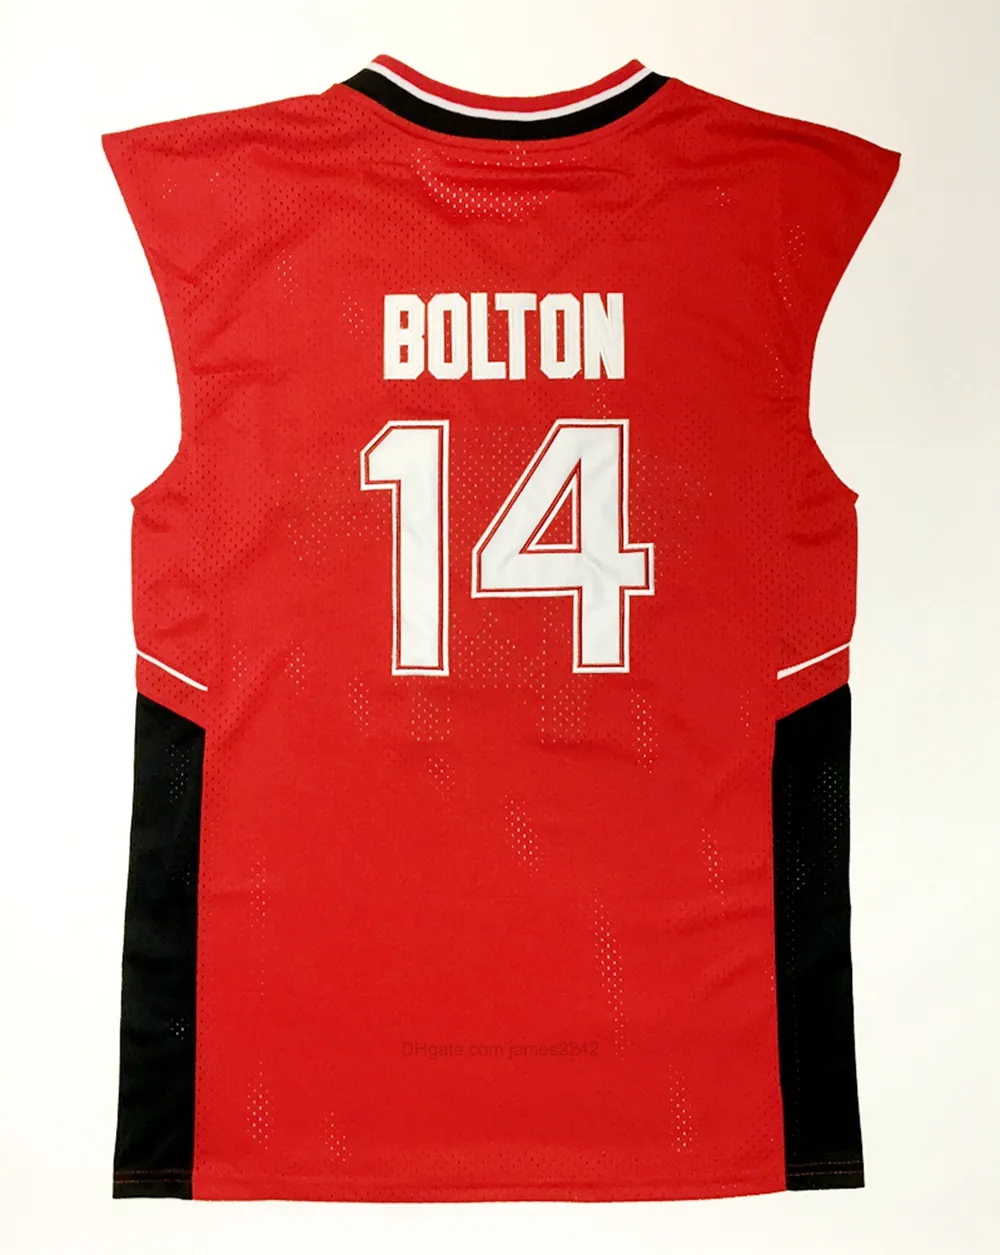 Nave dagli Stati Uniti #Wildcats 14 Troy Bolton Basketball Jersey High School College Maglie Mens Vintage cucito Rosso Taglia S-XXXL